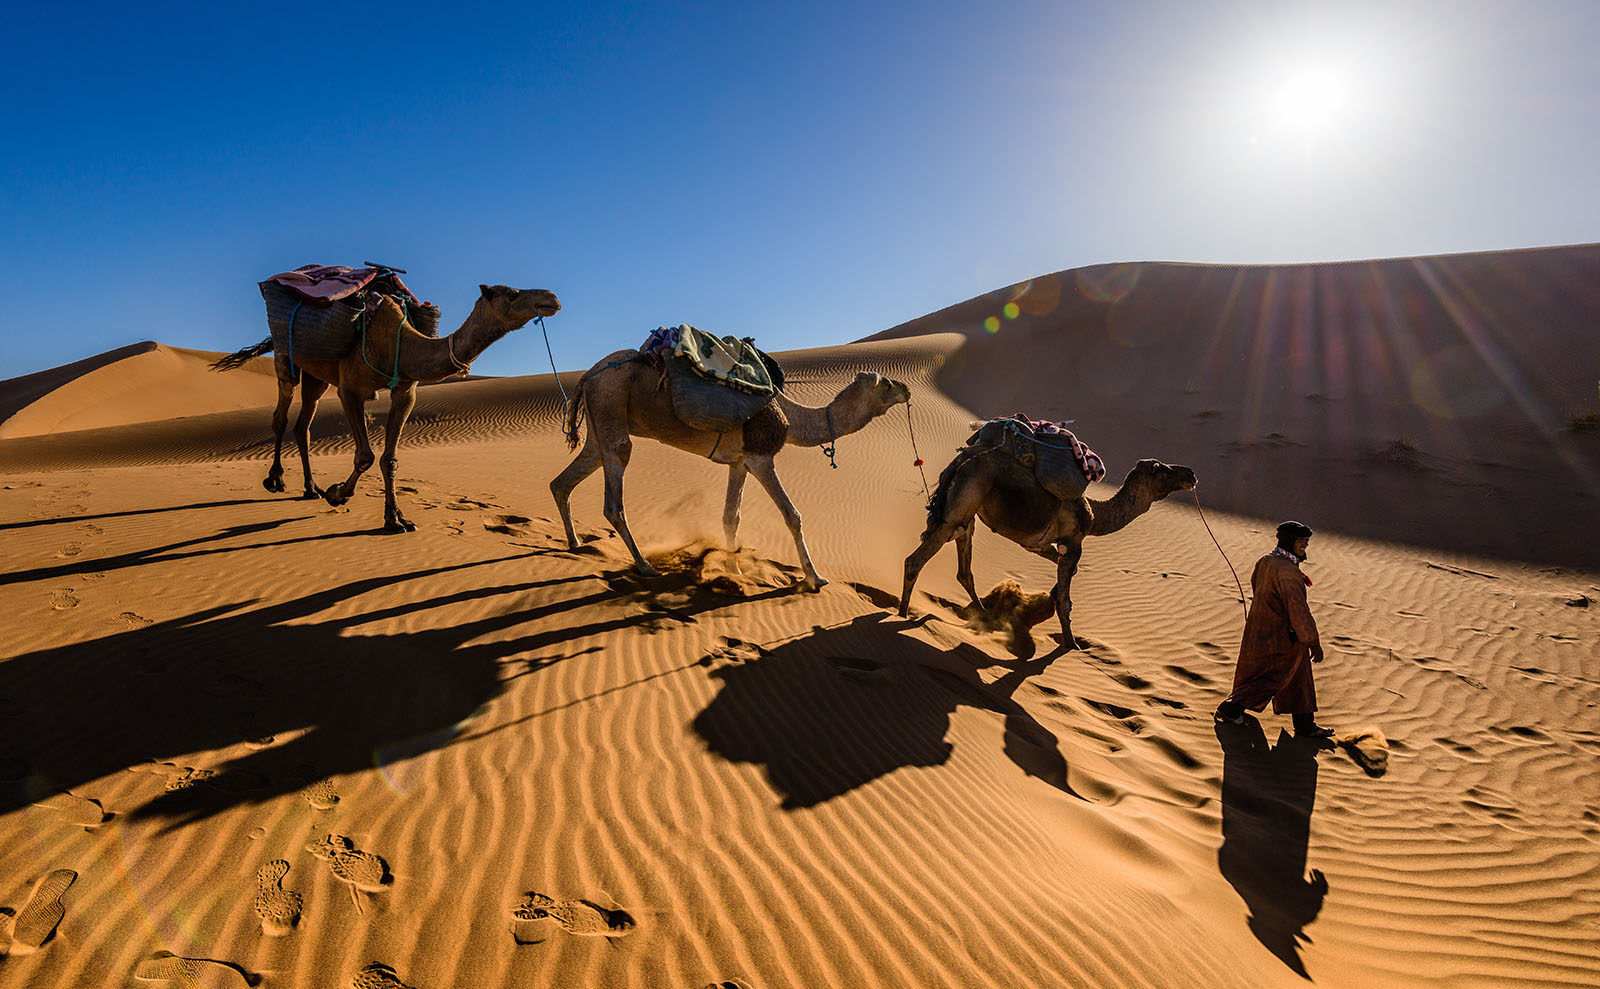  camels walking across the sahara desert